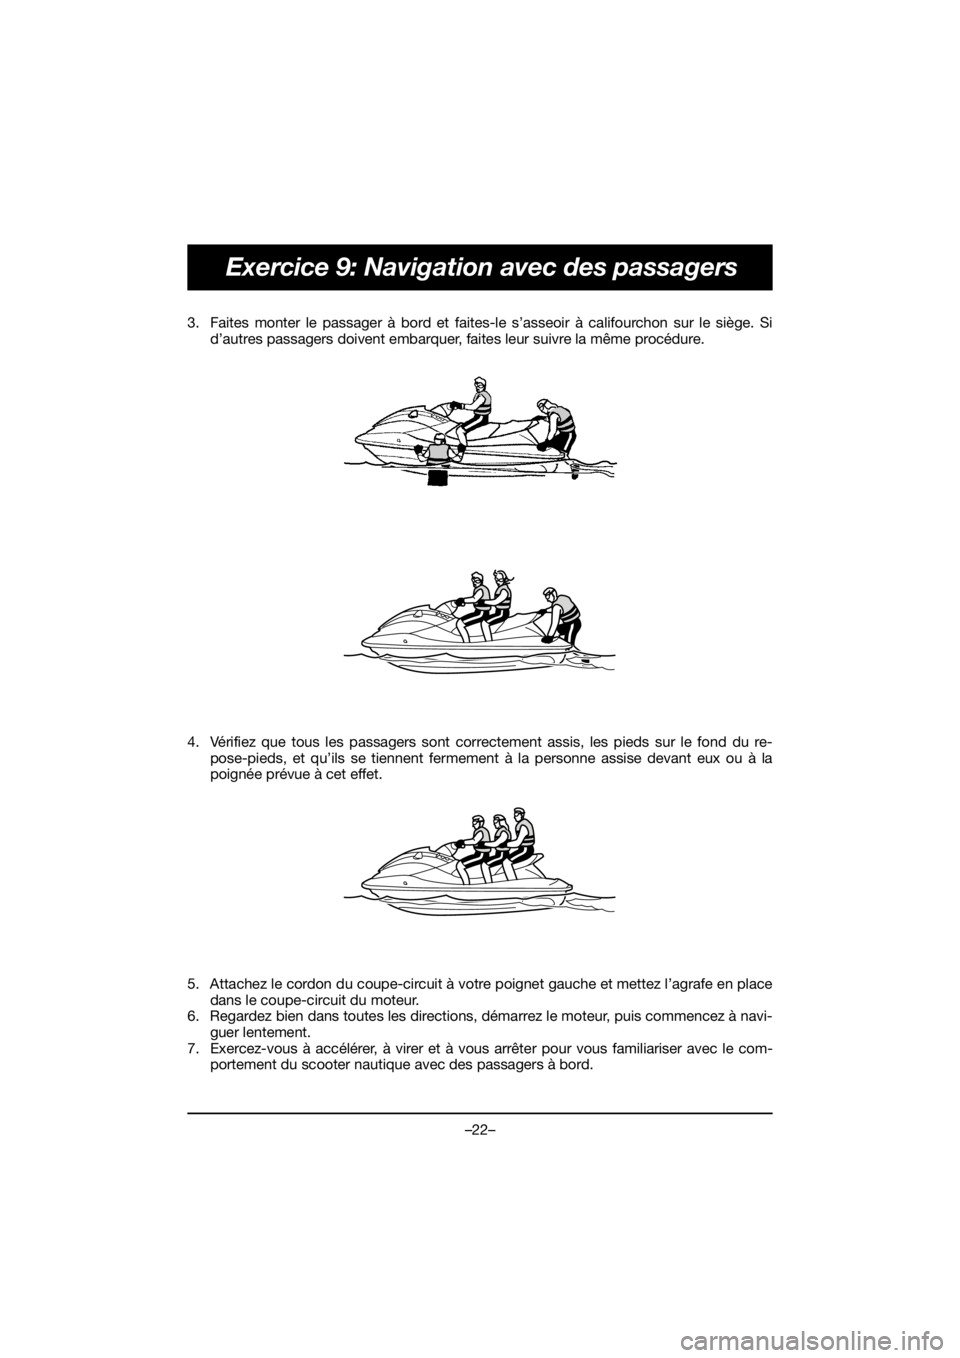 YAMAHA EX 2019  Manual de utilização (in Portuguese) –22–
Exercice 9: Navigation avec des passagers
3. Faites monter le passager à bord et faites-le s’asseoir à califourchon sur le siège. Si
d’autres passagers doivent embarquer, faites leur s